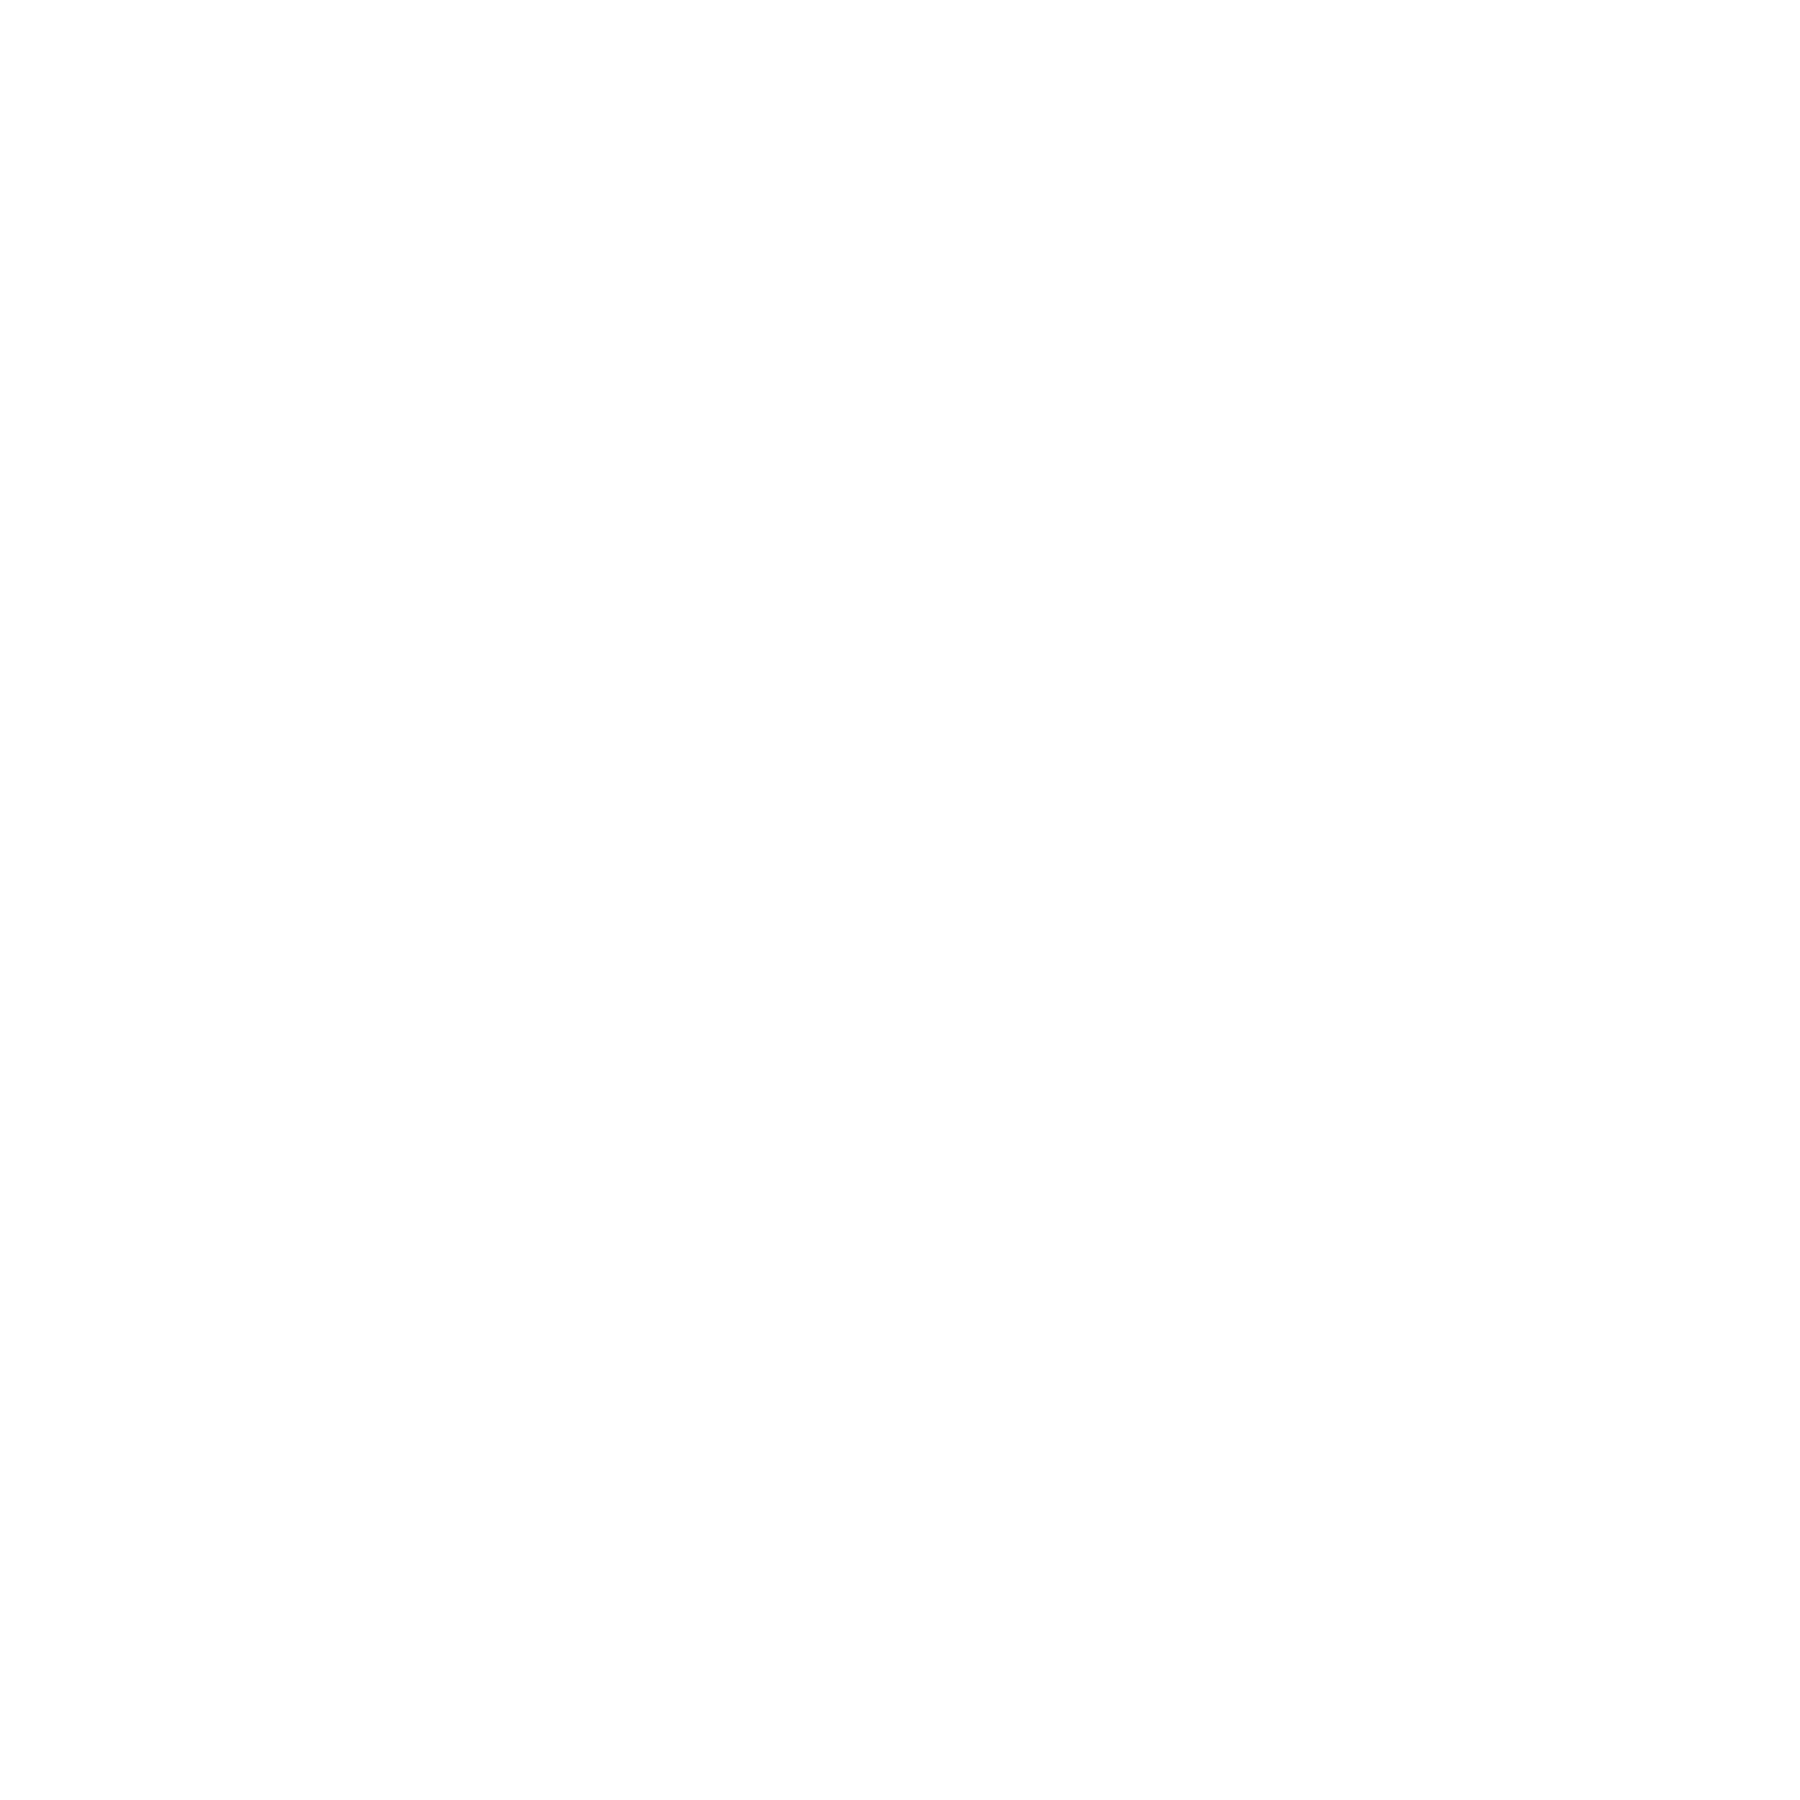 Story Bothy